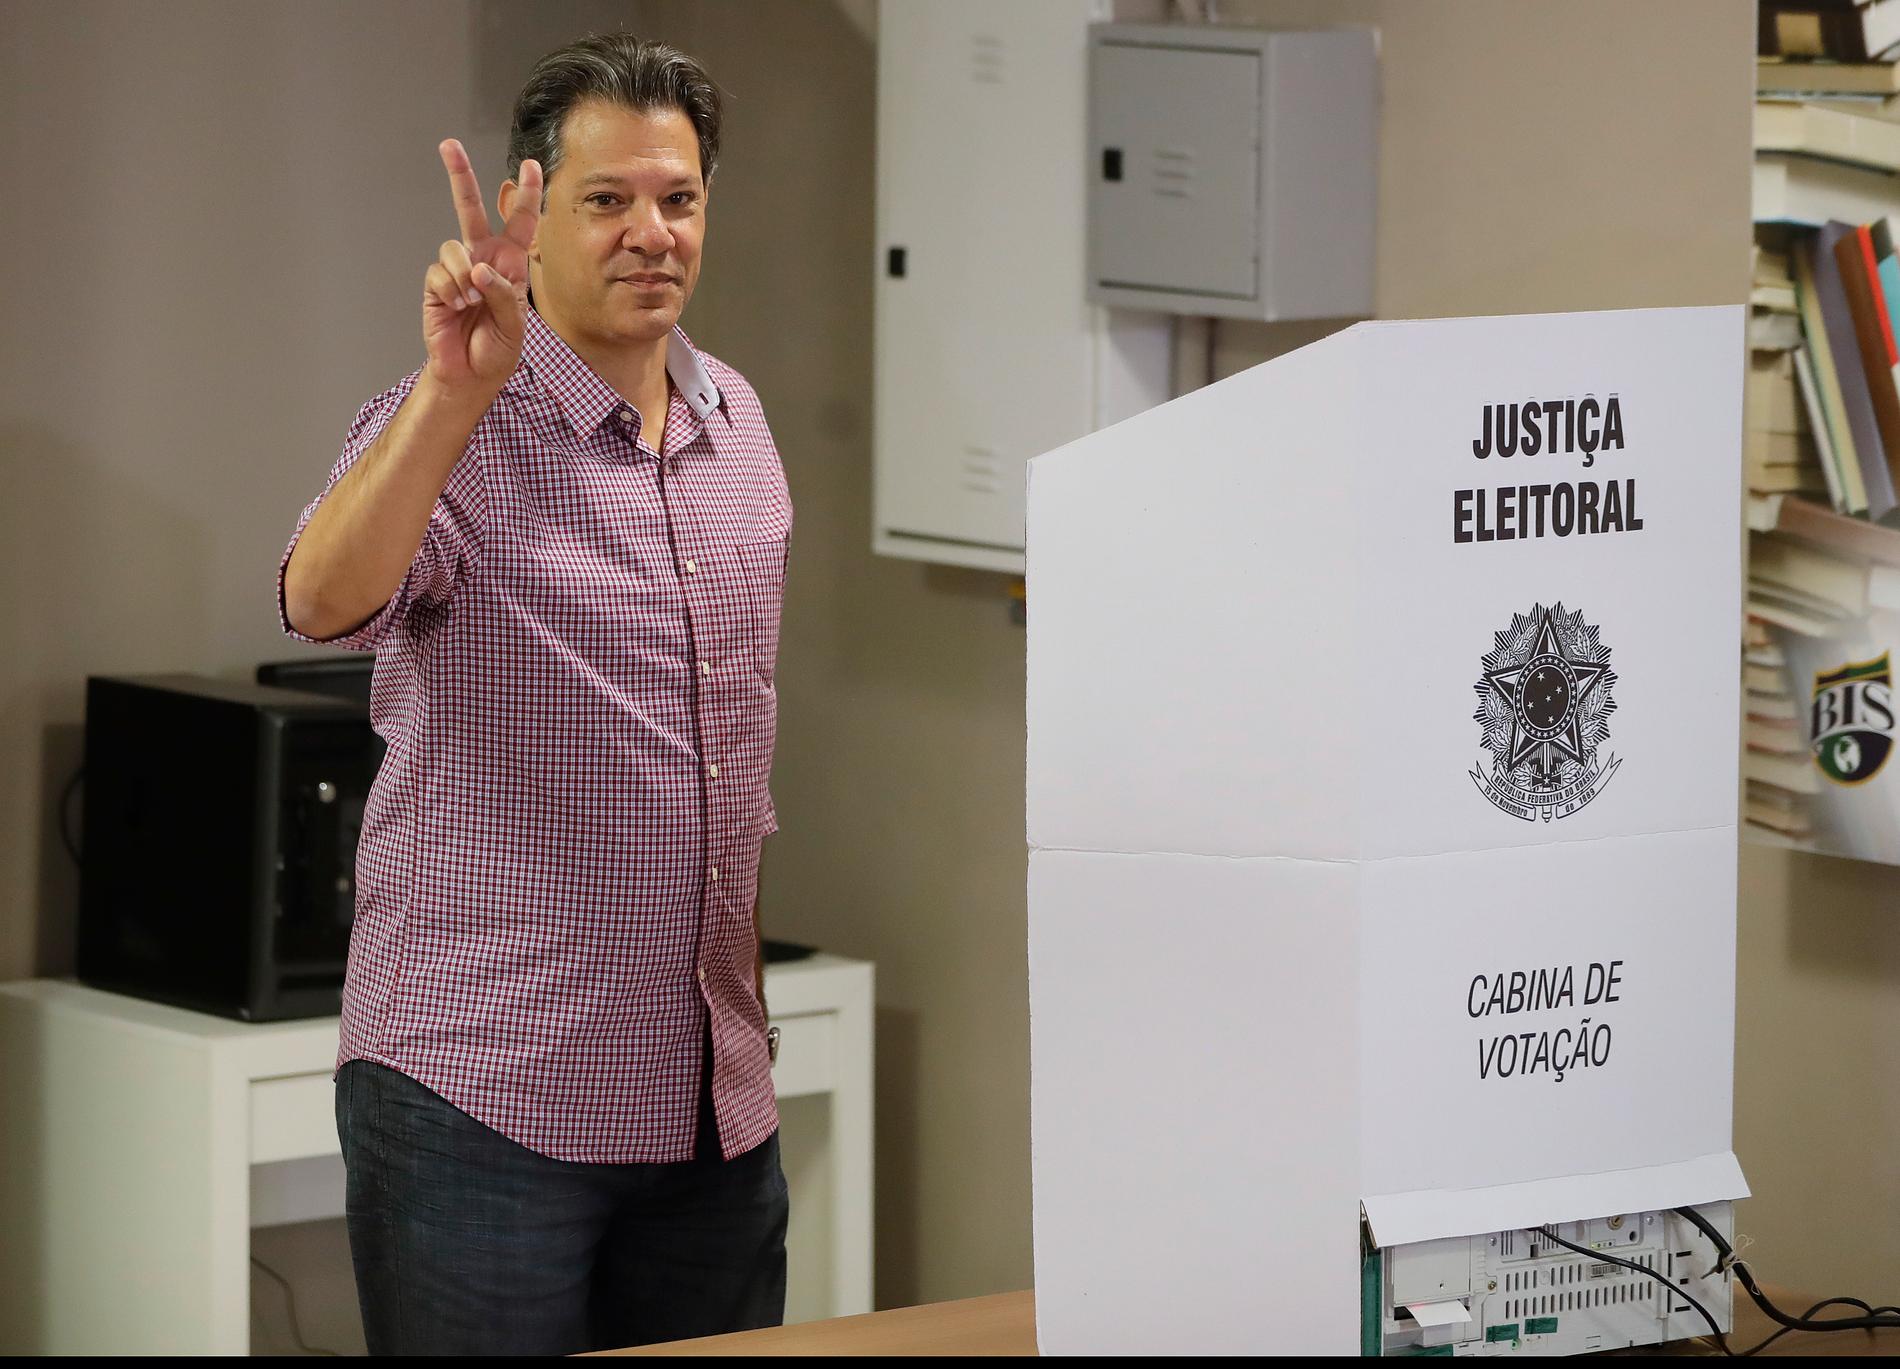 Vänsterkandidaten Fernando Haddad, Arbetarpartiet (PT), röstade i São Paulo på söndagen. Han har handplockats av sin mentor, den forne presidenten Lula da Silva.